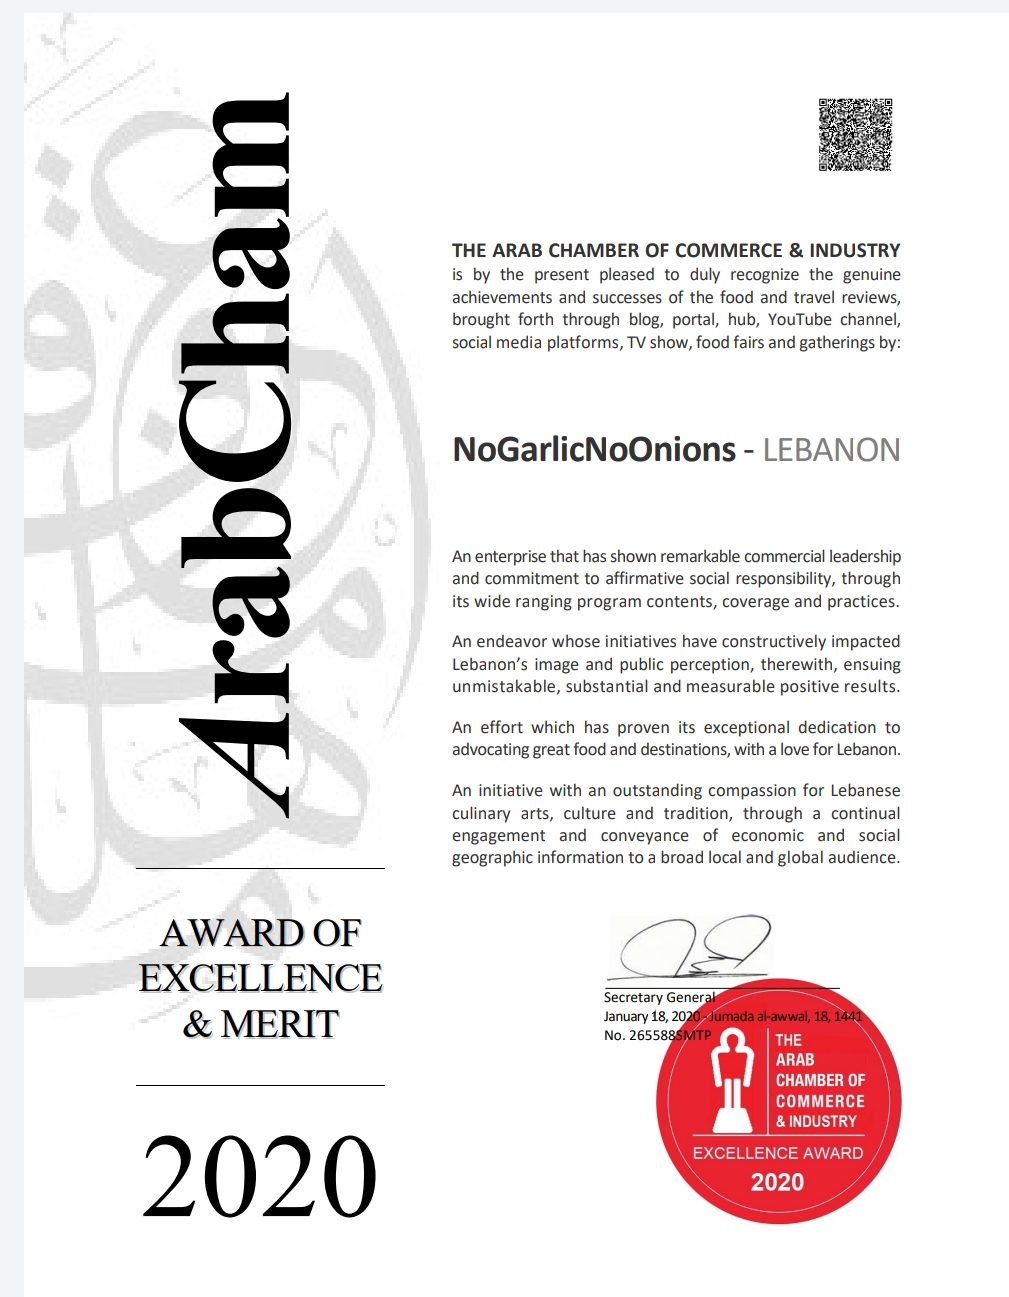 ngno-arabcham-award-2020